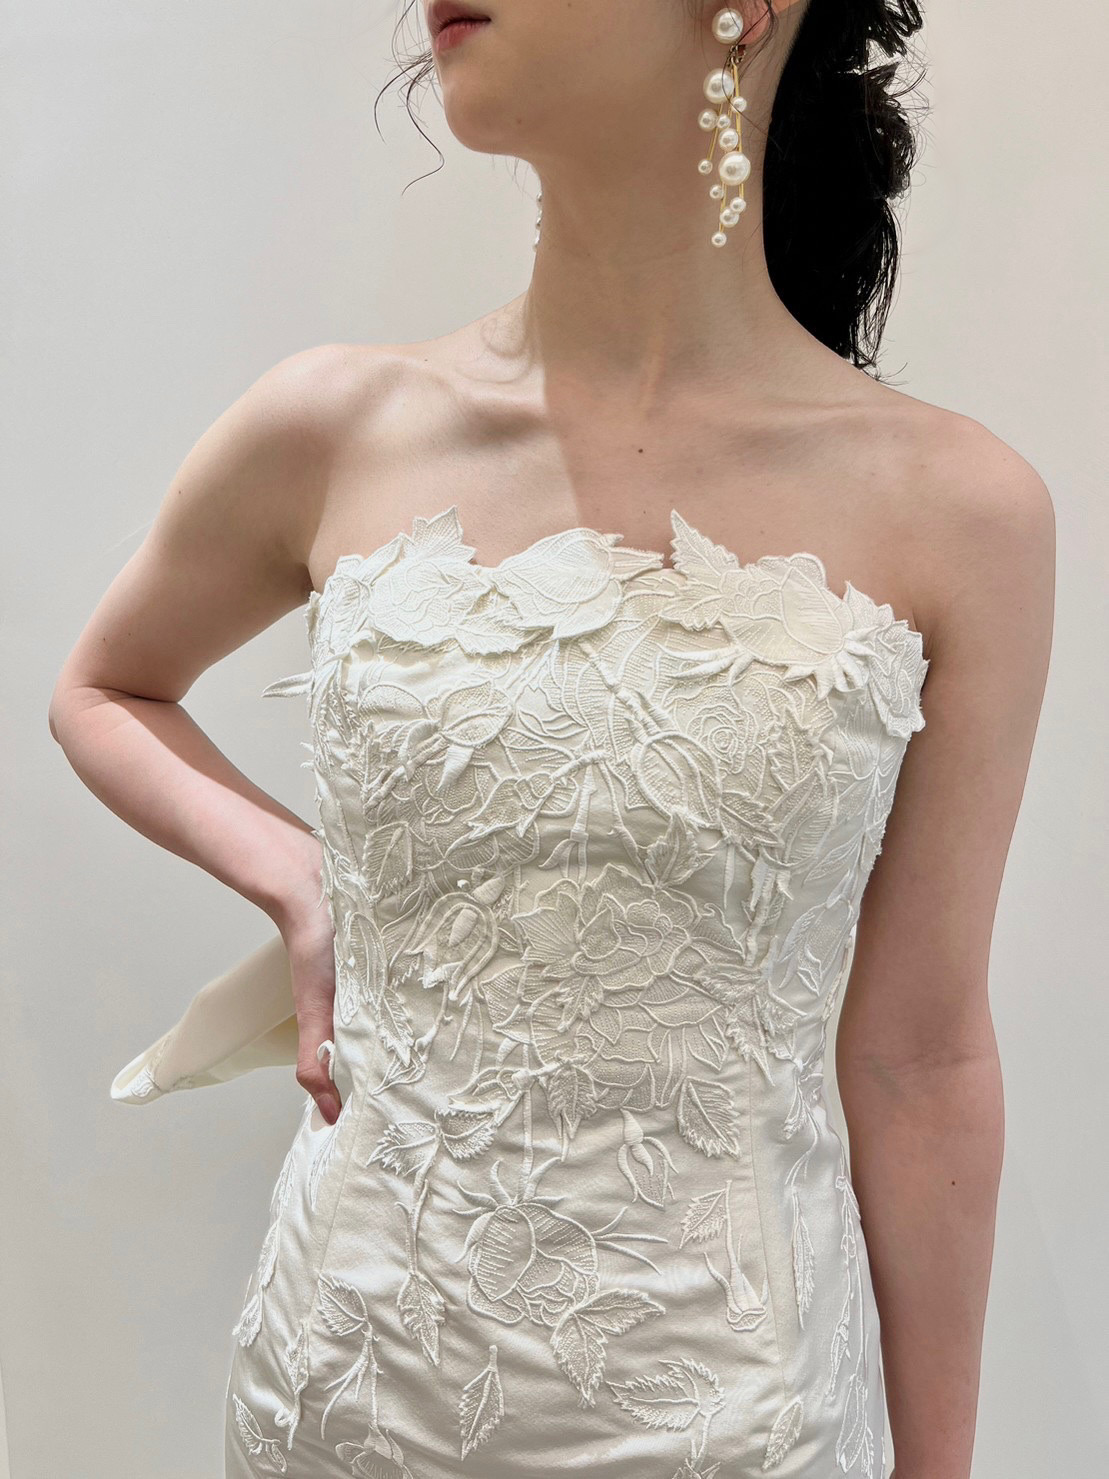 トリートドレッシング神戸店で神戸エリアのおしゃれな花嫁におすすめしたいオスカーデラレンタの新作のウェディングドレスをご自身らしさを演出できるコーディネートと合わせてご紹介します。